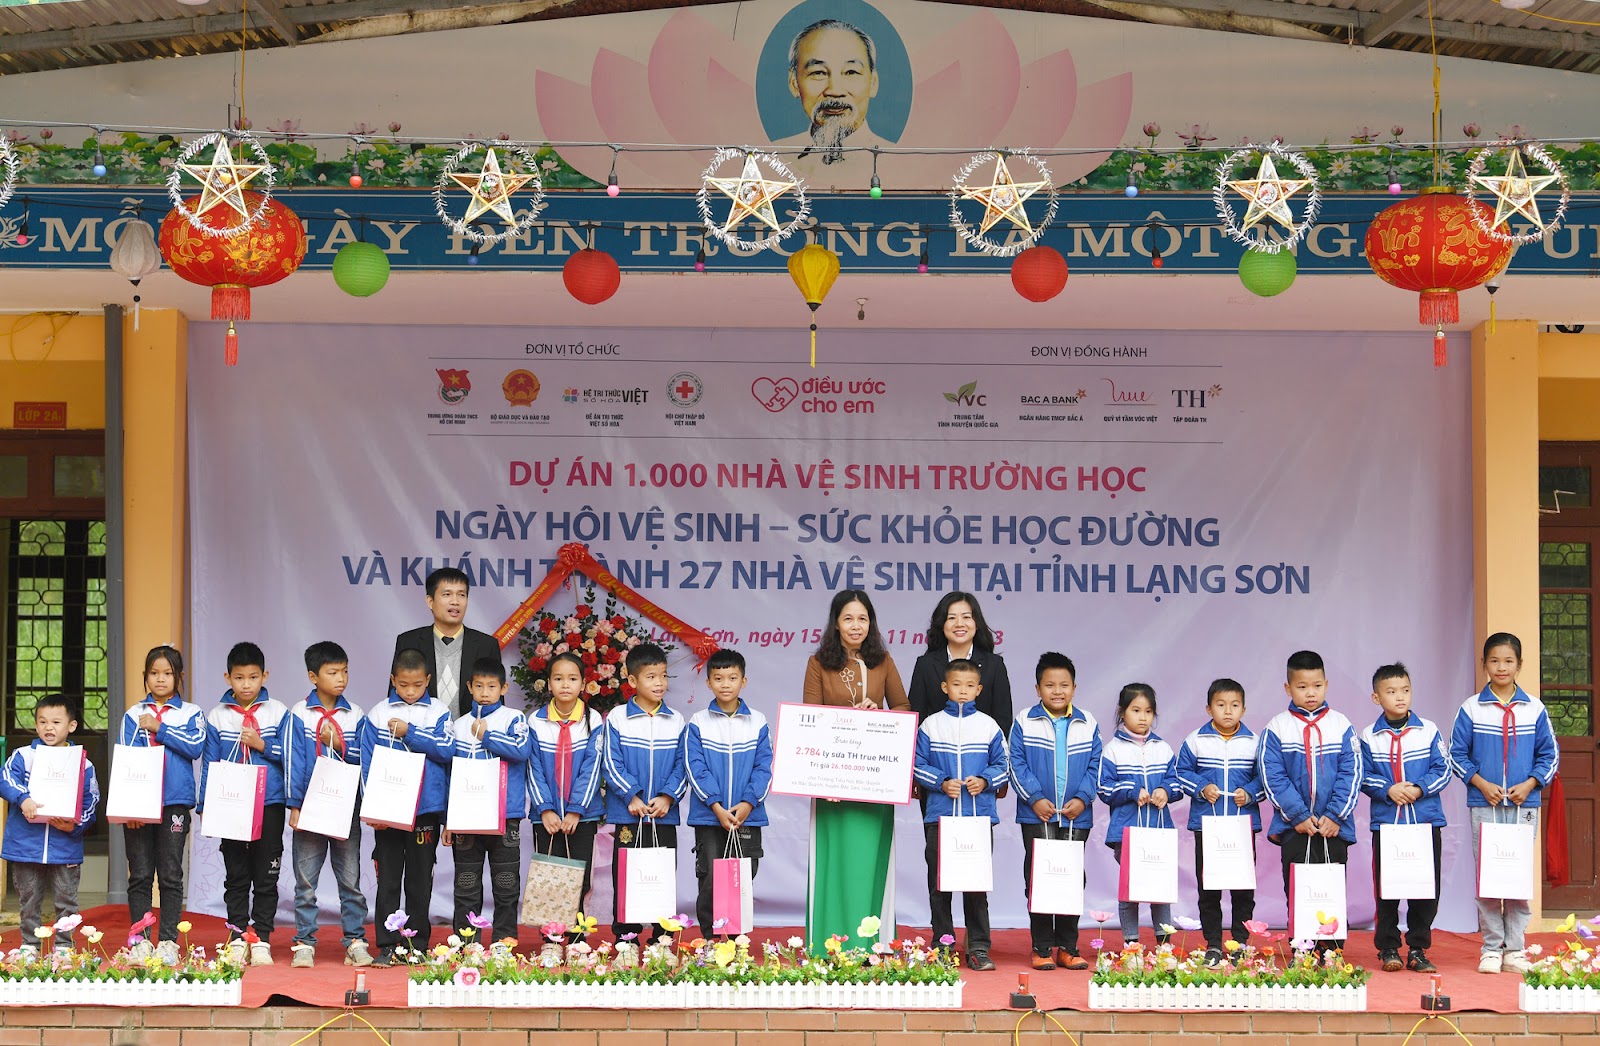 Quỹ Vì tầm vóc Việt triển khai dự án 1.000 nhà vệ sinh trường học: Niềm vui mới ở những ngôi trường vùng cao - Ảnh 5.